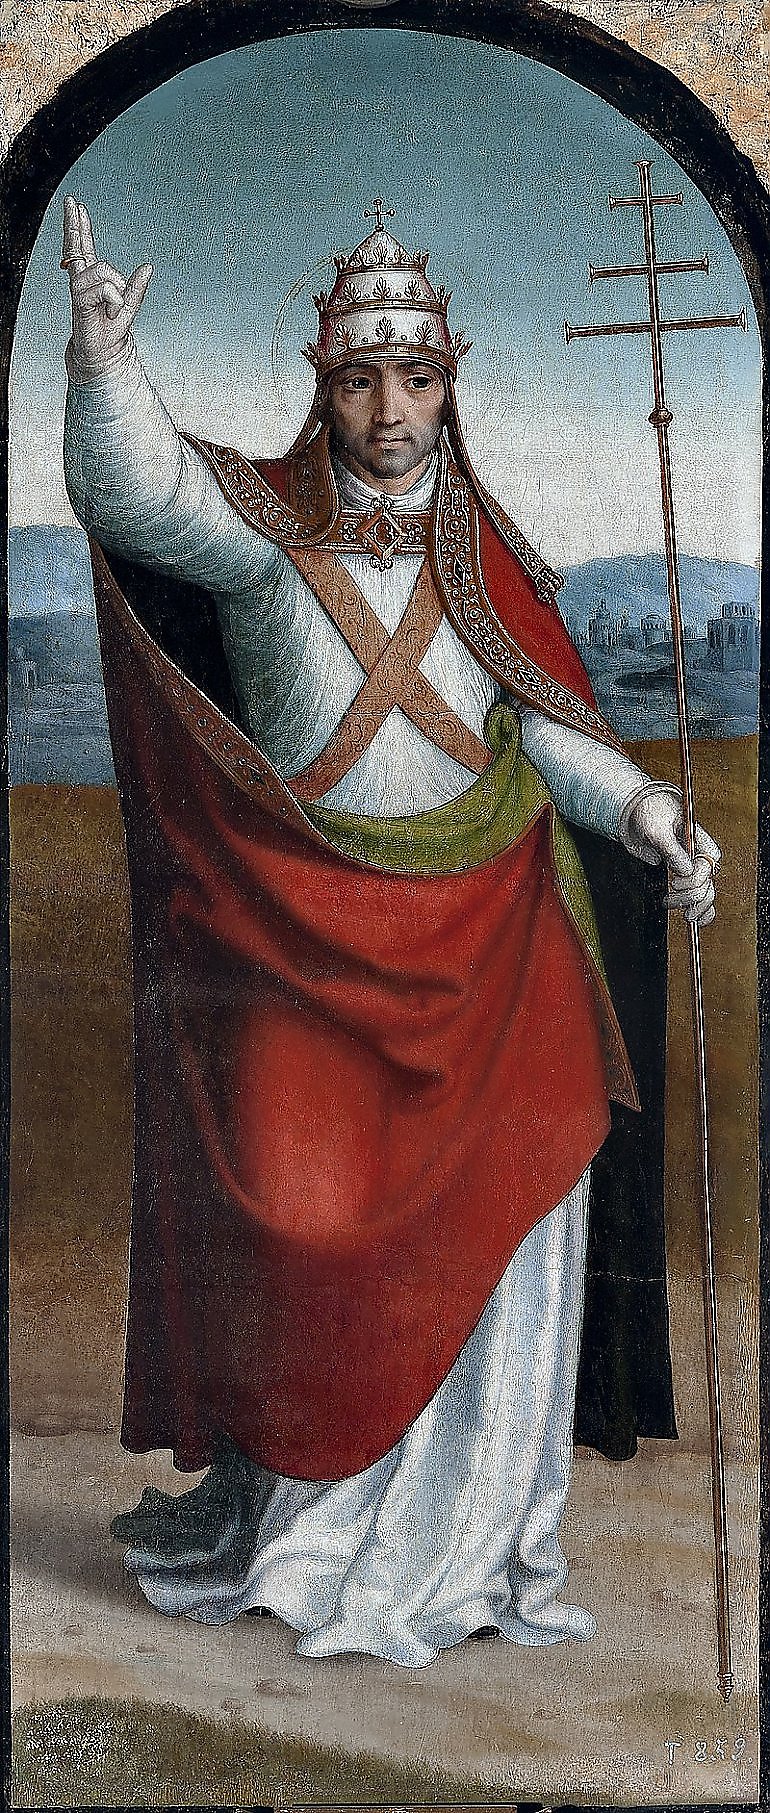 Św. Klemens I, papież i męczennik - patron dnia (23.11)